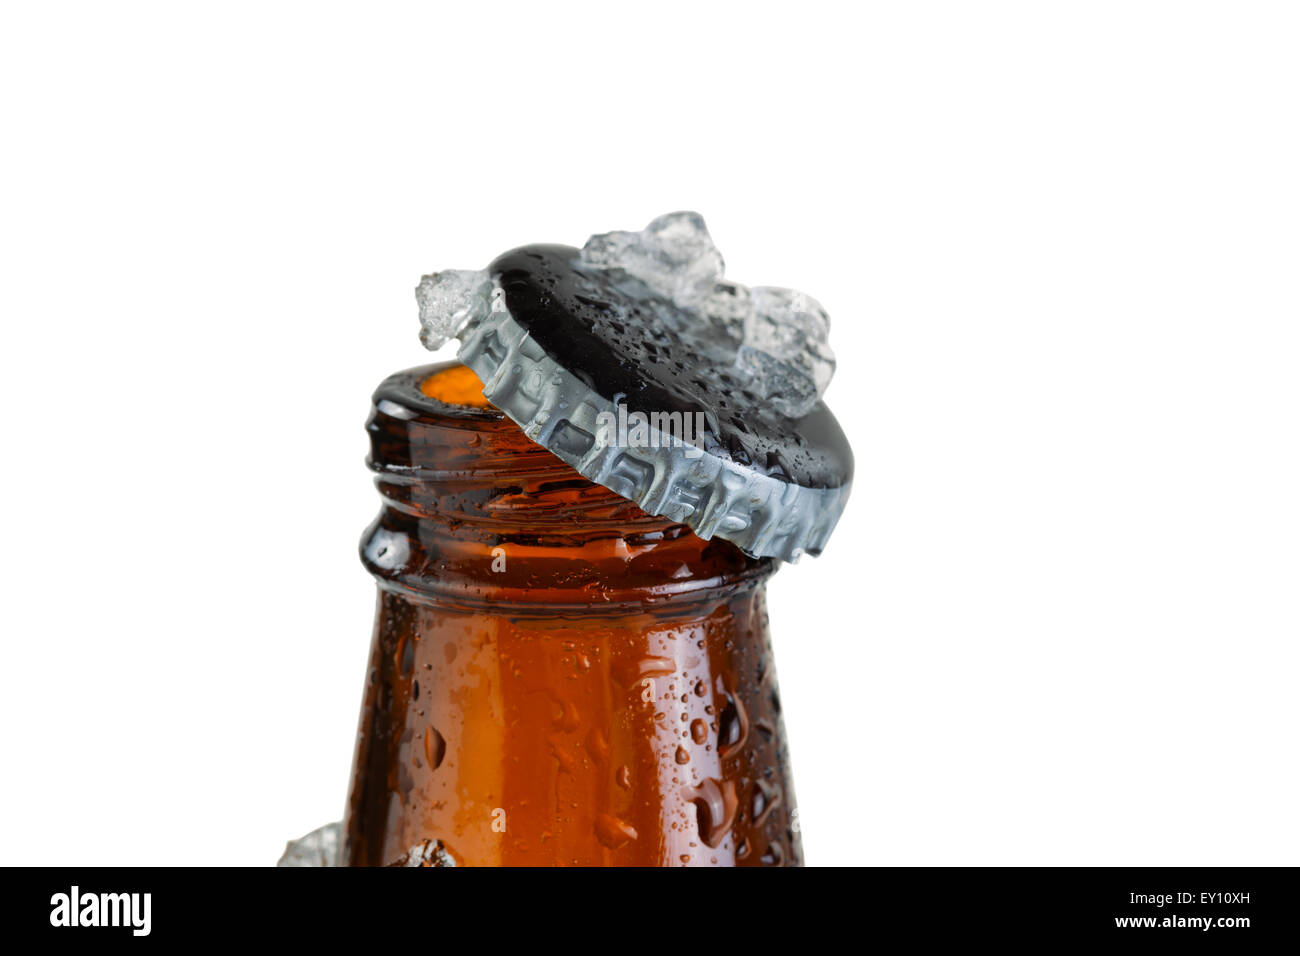 Nahaufnahme von einem Bier Bottle Neck, mit Kappe, bedeckt mit Eis- und beschlagfrei. Layout im Querformat. Stockfoto